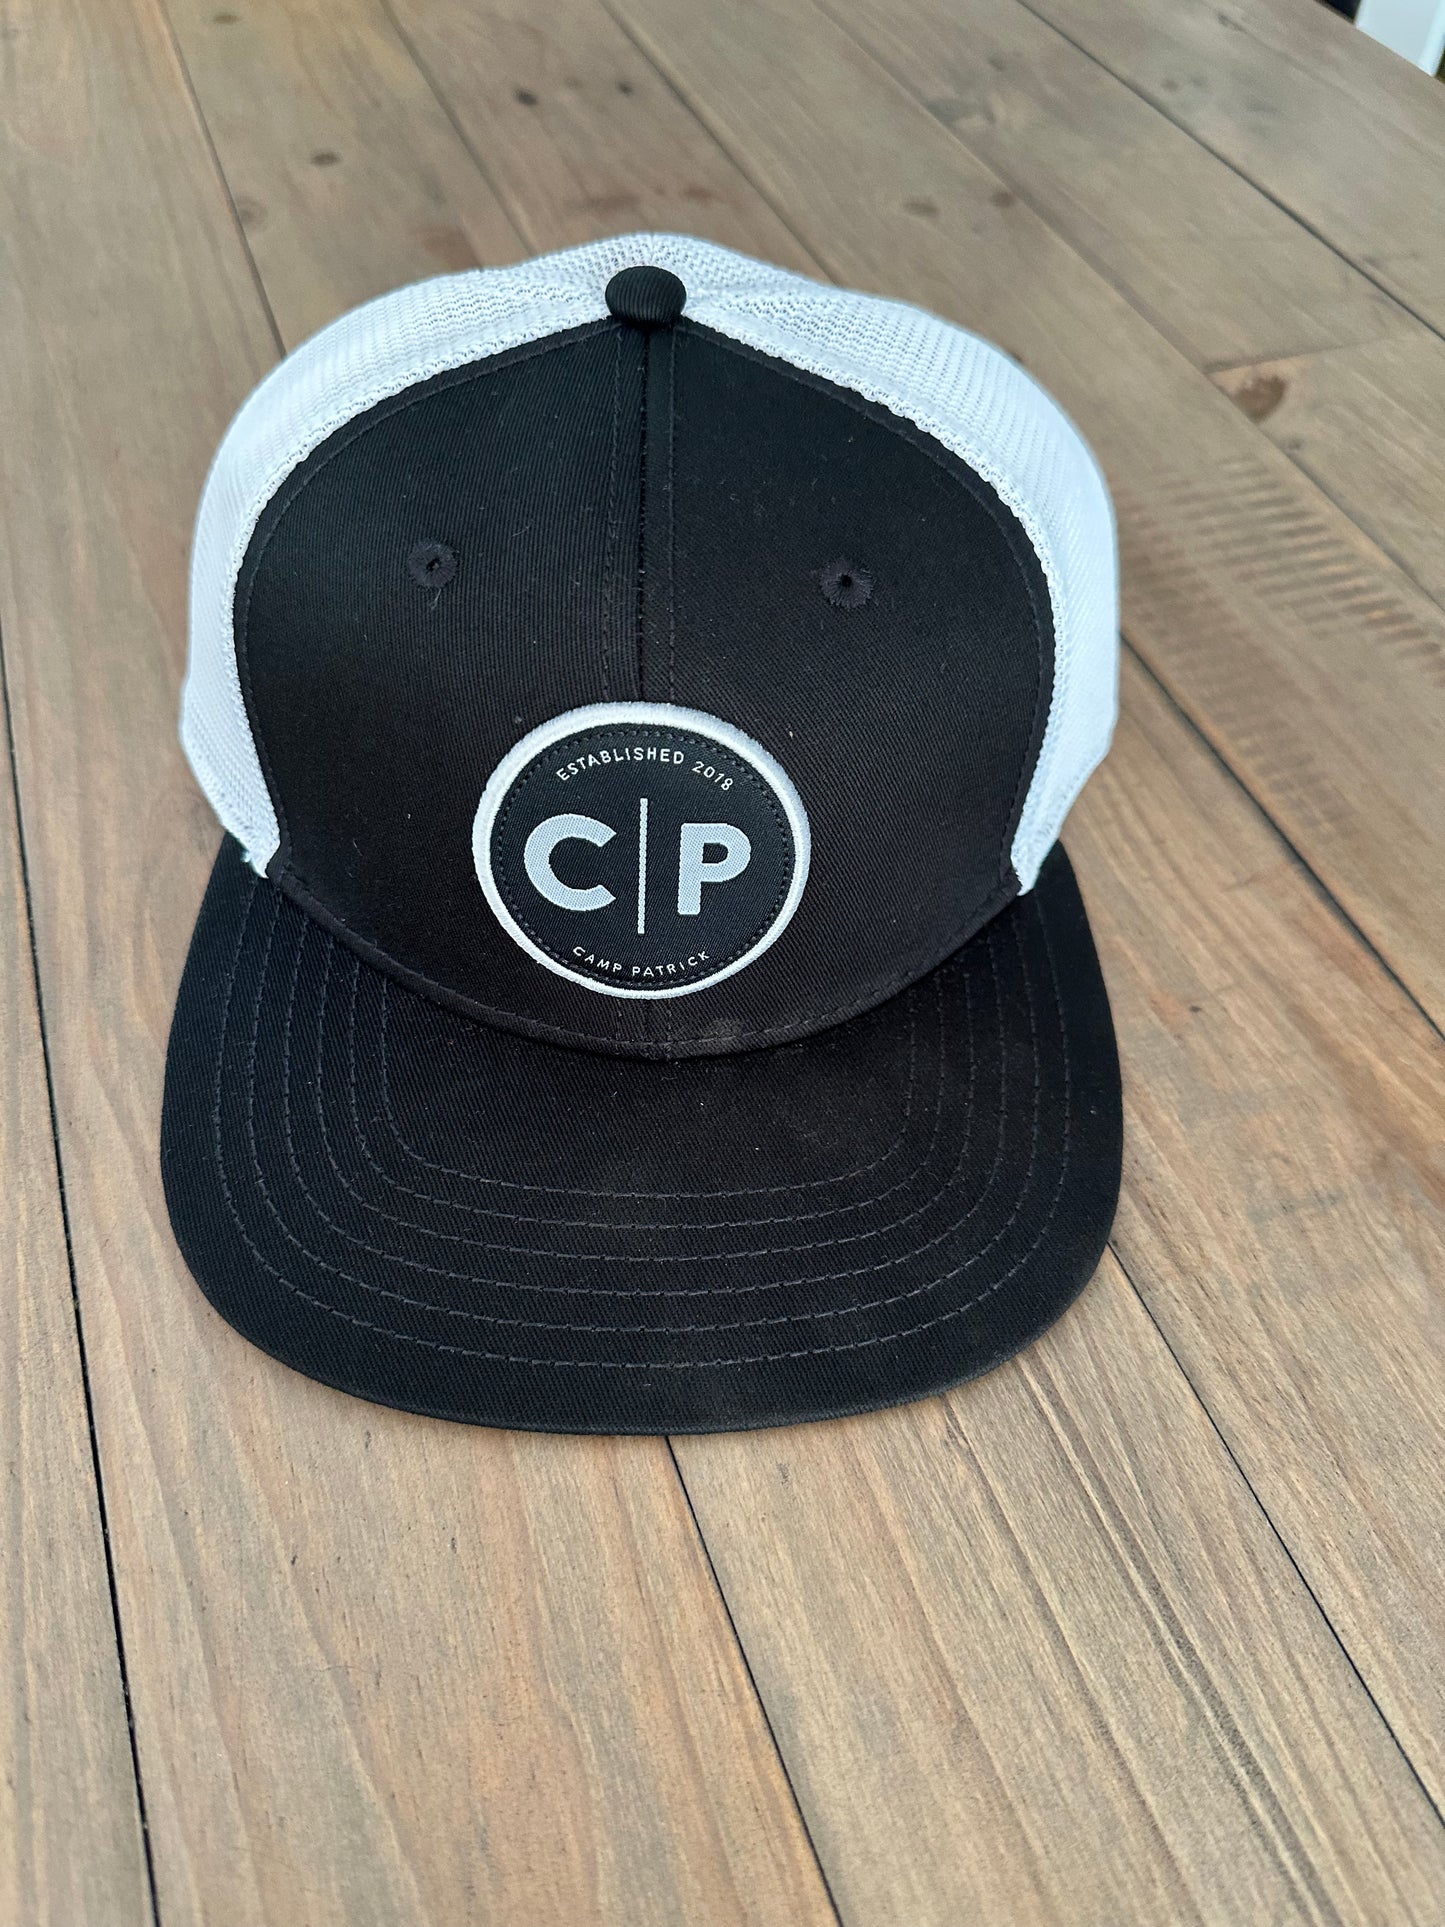 CP Hat